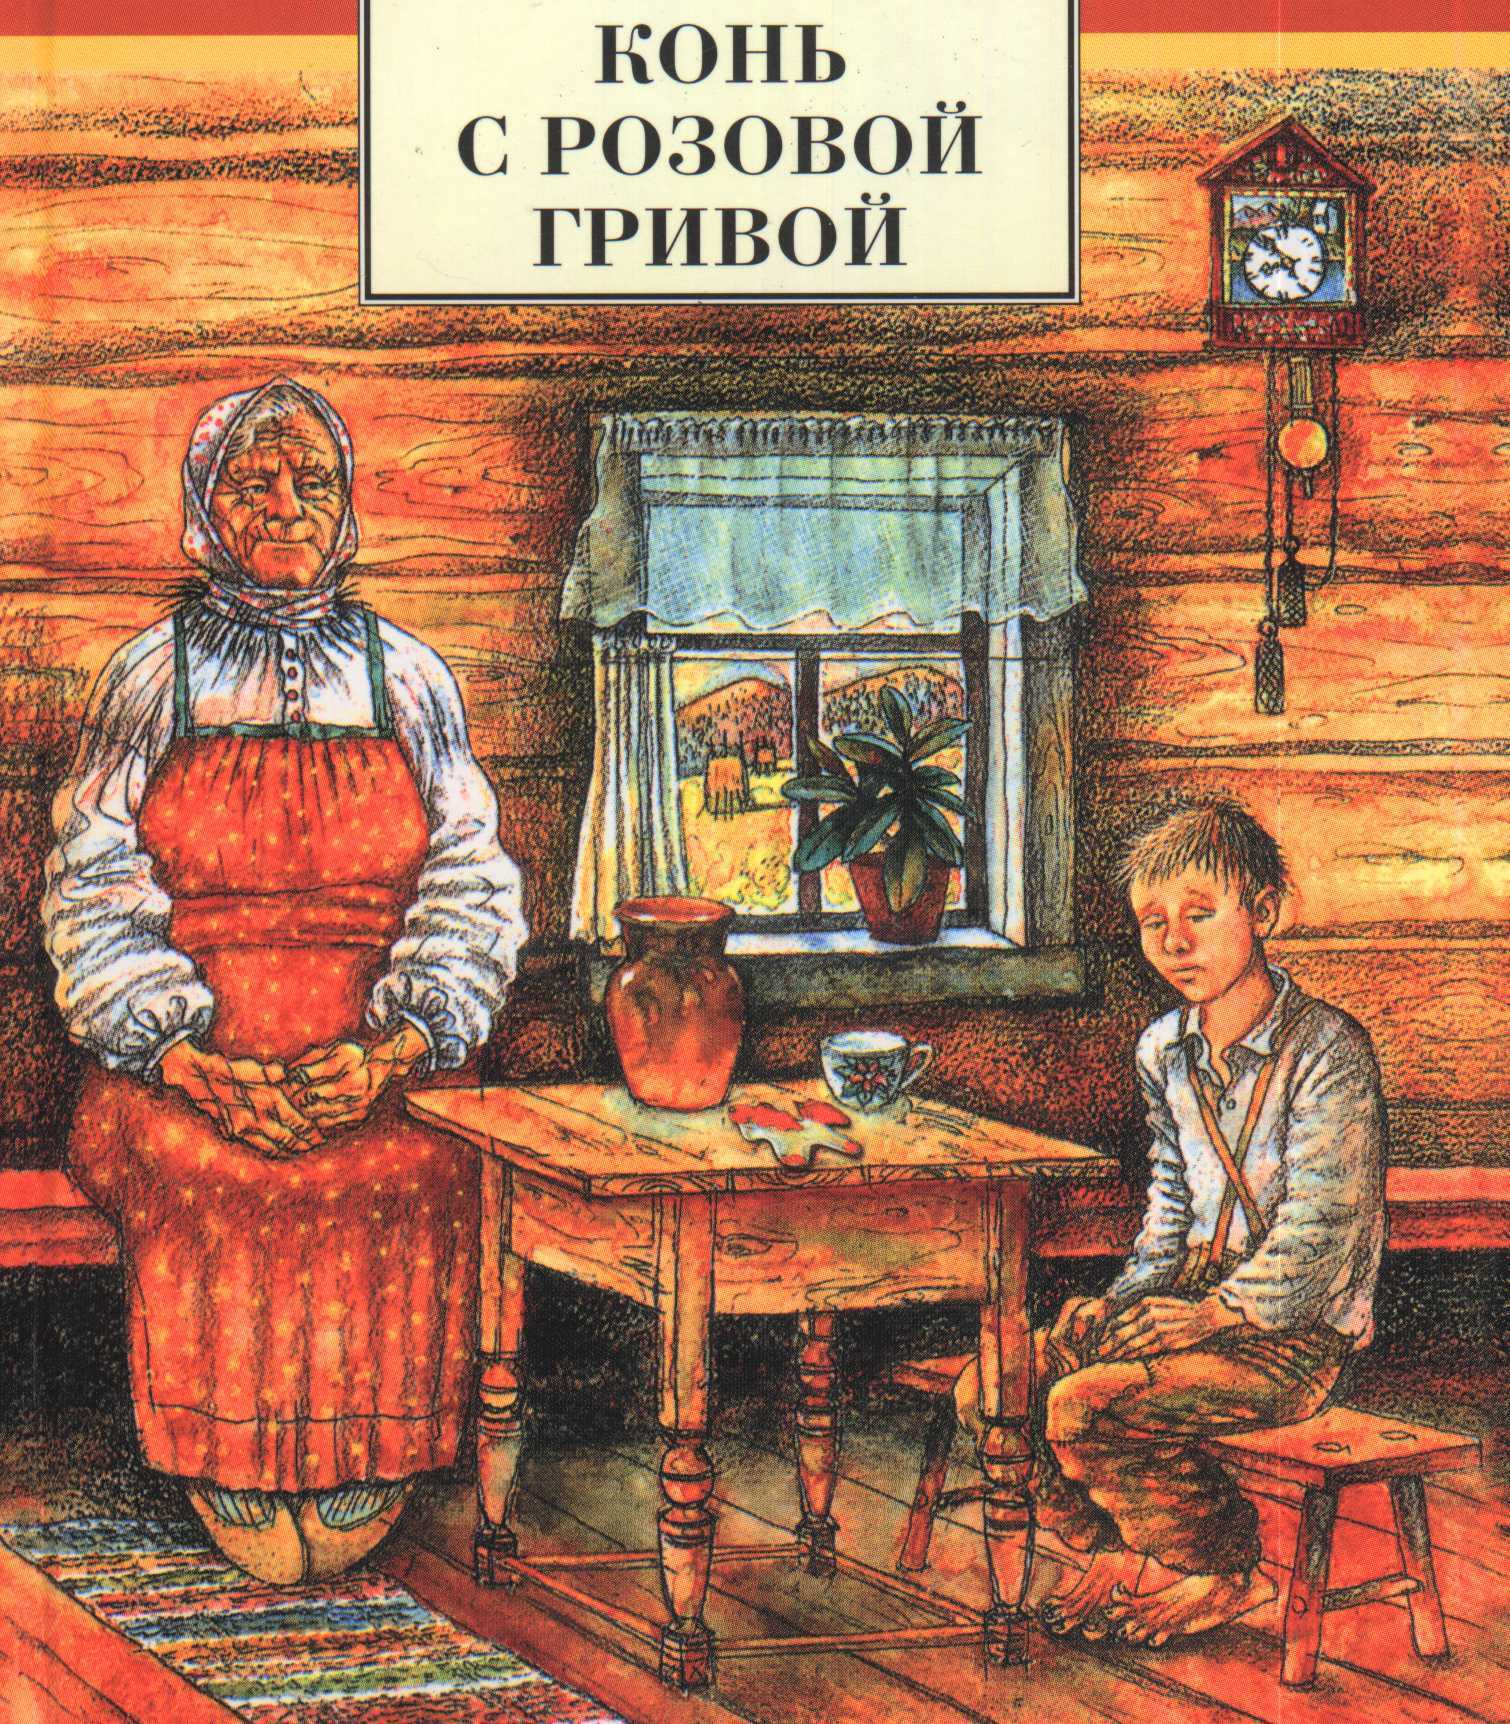 Бабушка главный герой произведения. Рассказ Виктора Петровича Астафьева конь с розовой гривой.